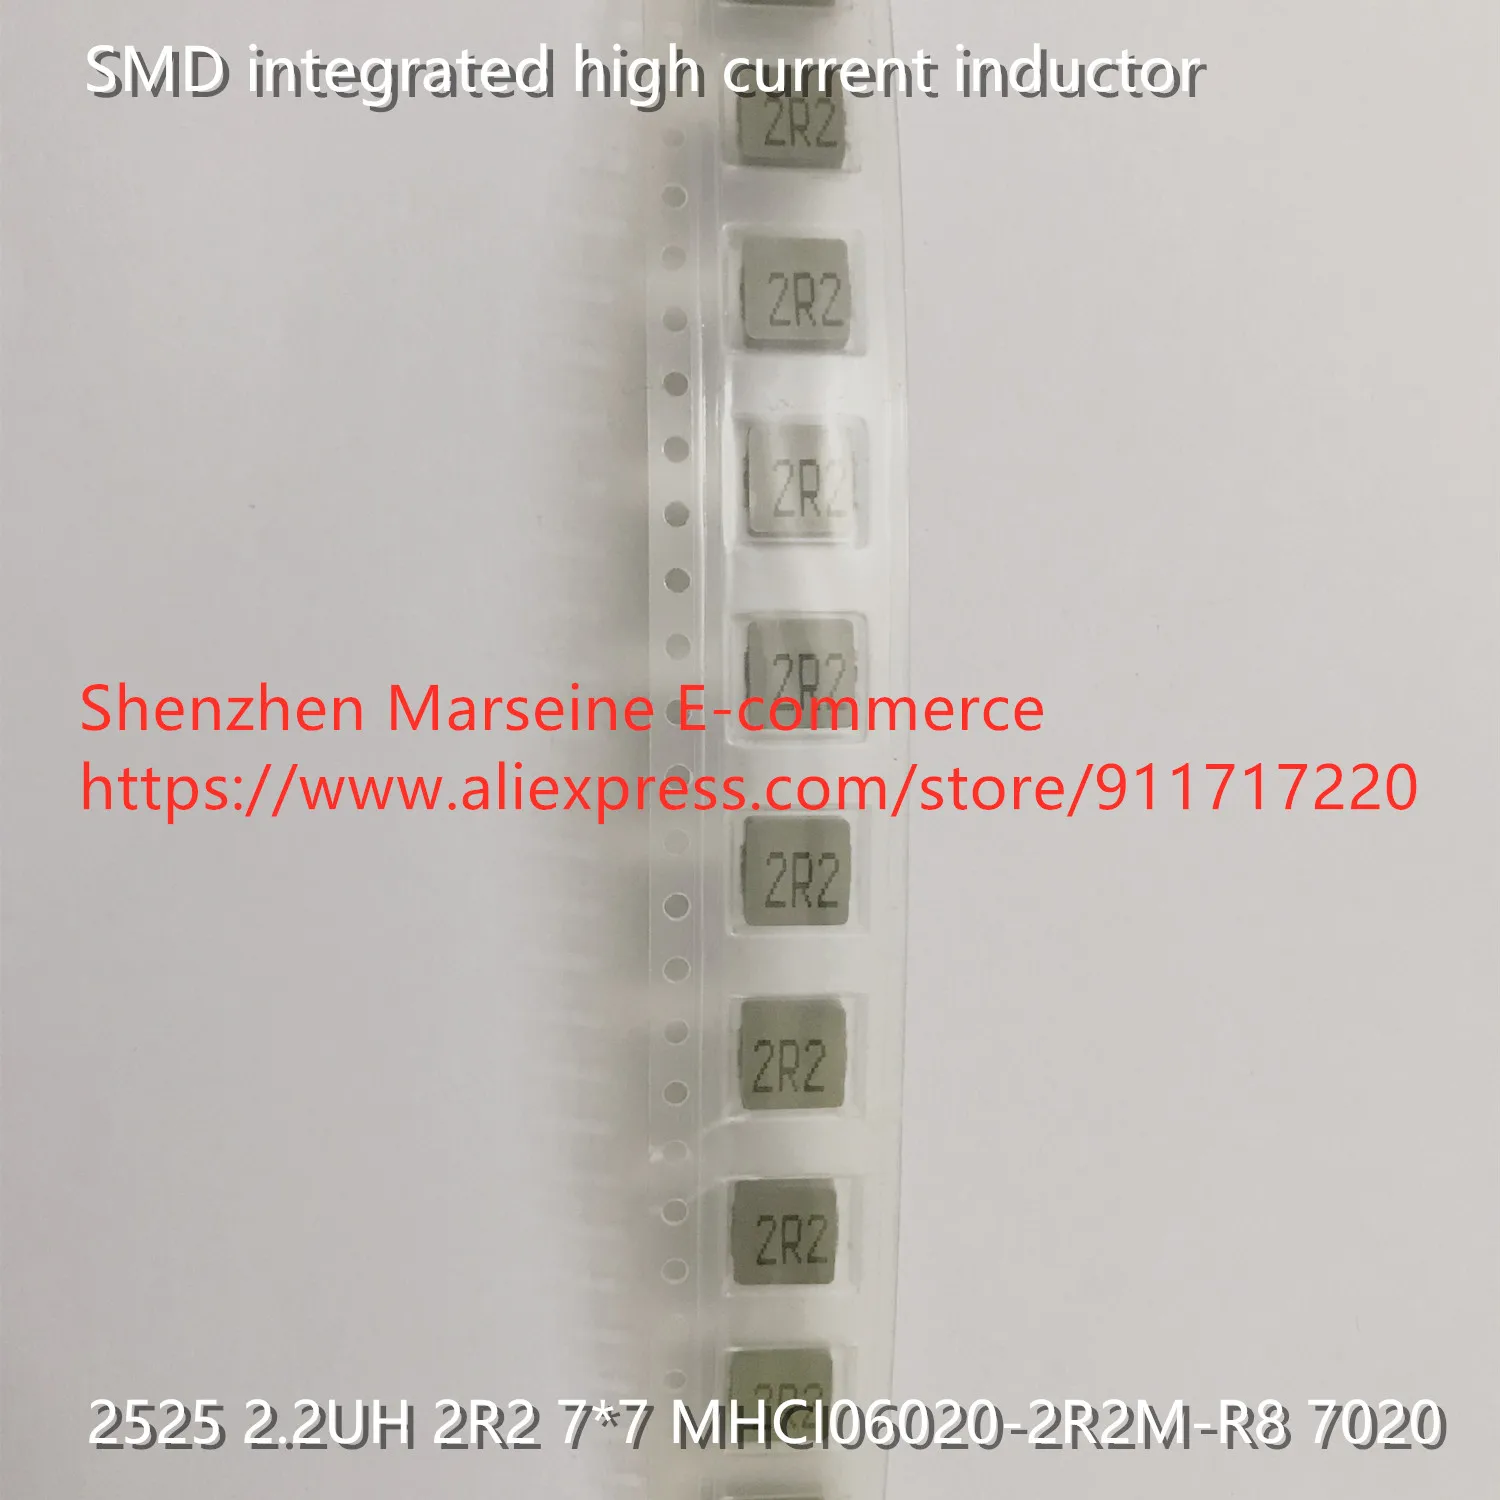 Оригинальный новый 100% SMD интегрированный индуктор большого тока 2525 2.2UH 2R2 7*7